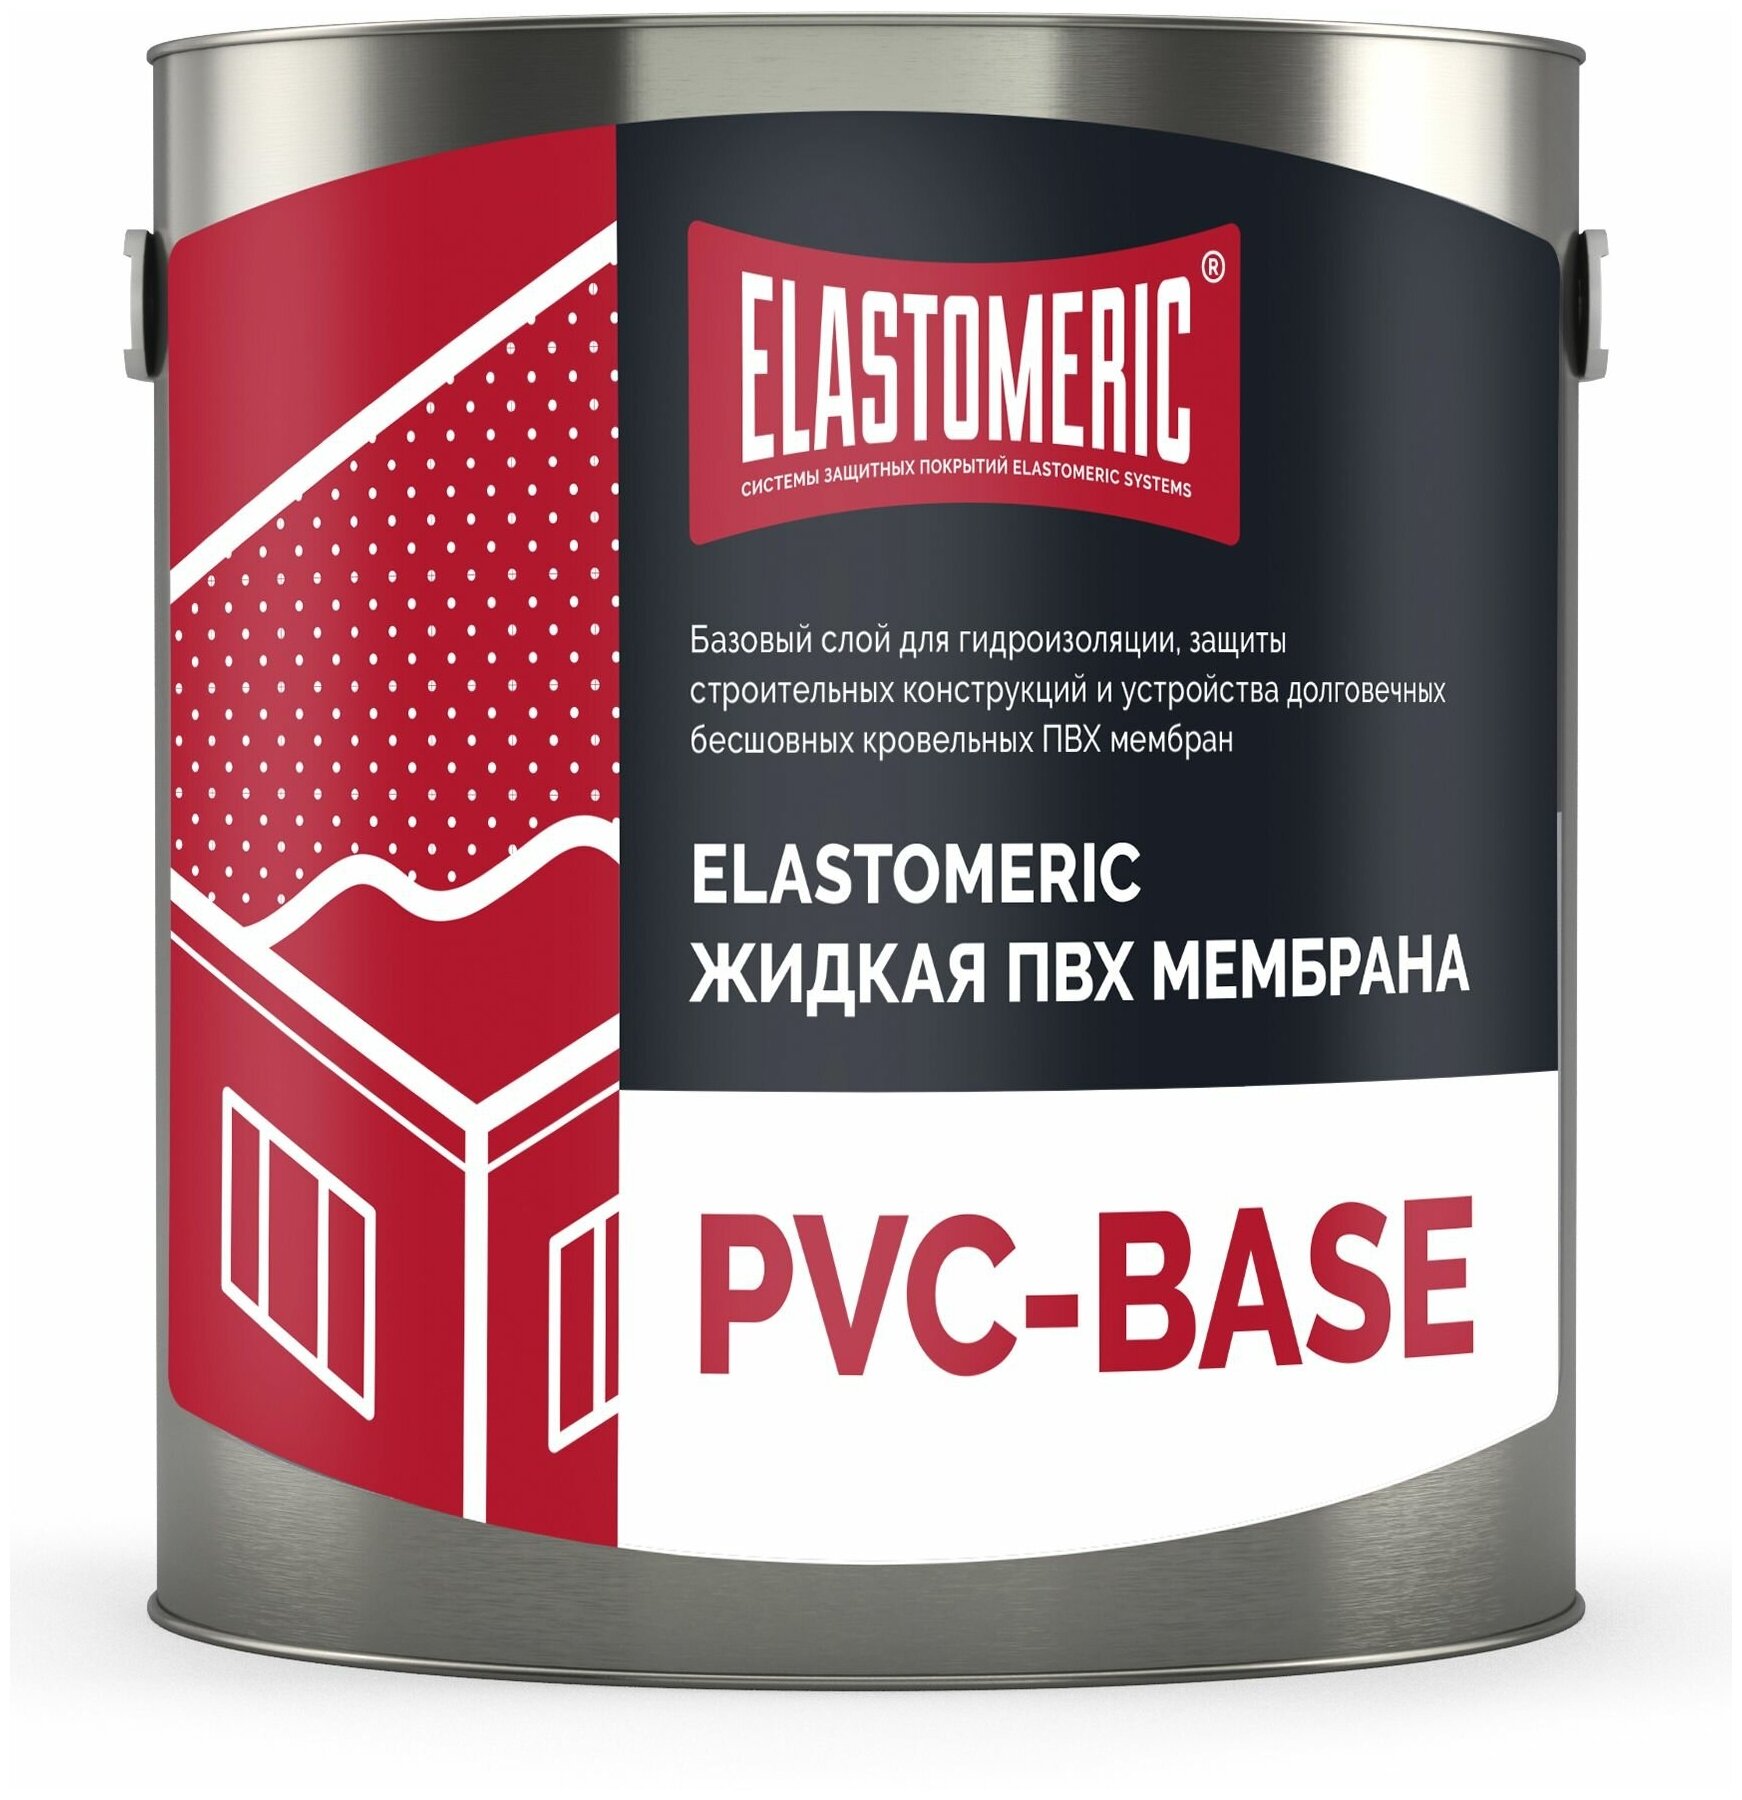 Жидкая ПВХ мембрана Elastomeric PVC - Base 3 кг (базовый слой)